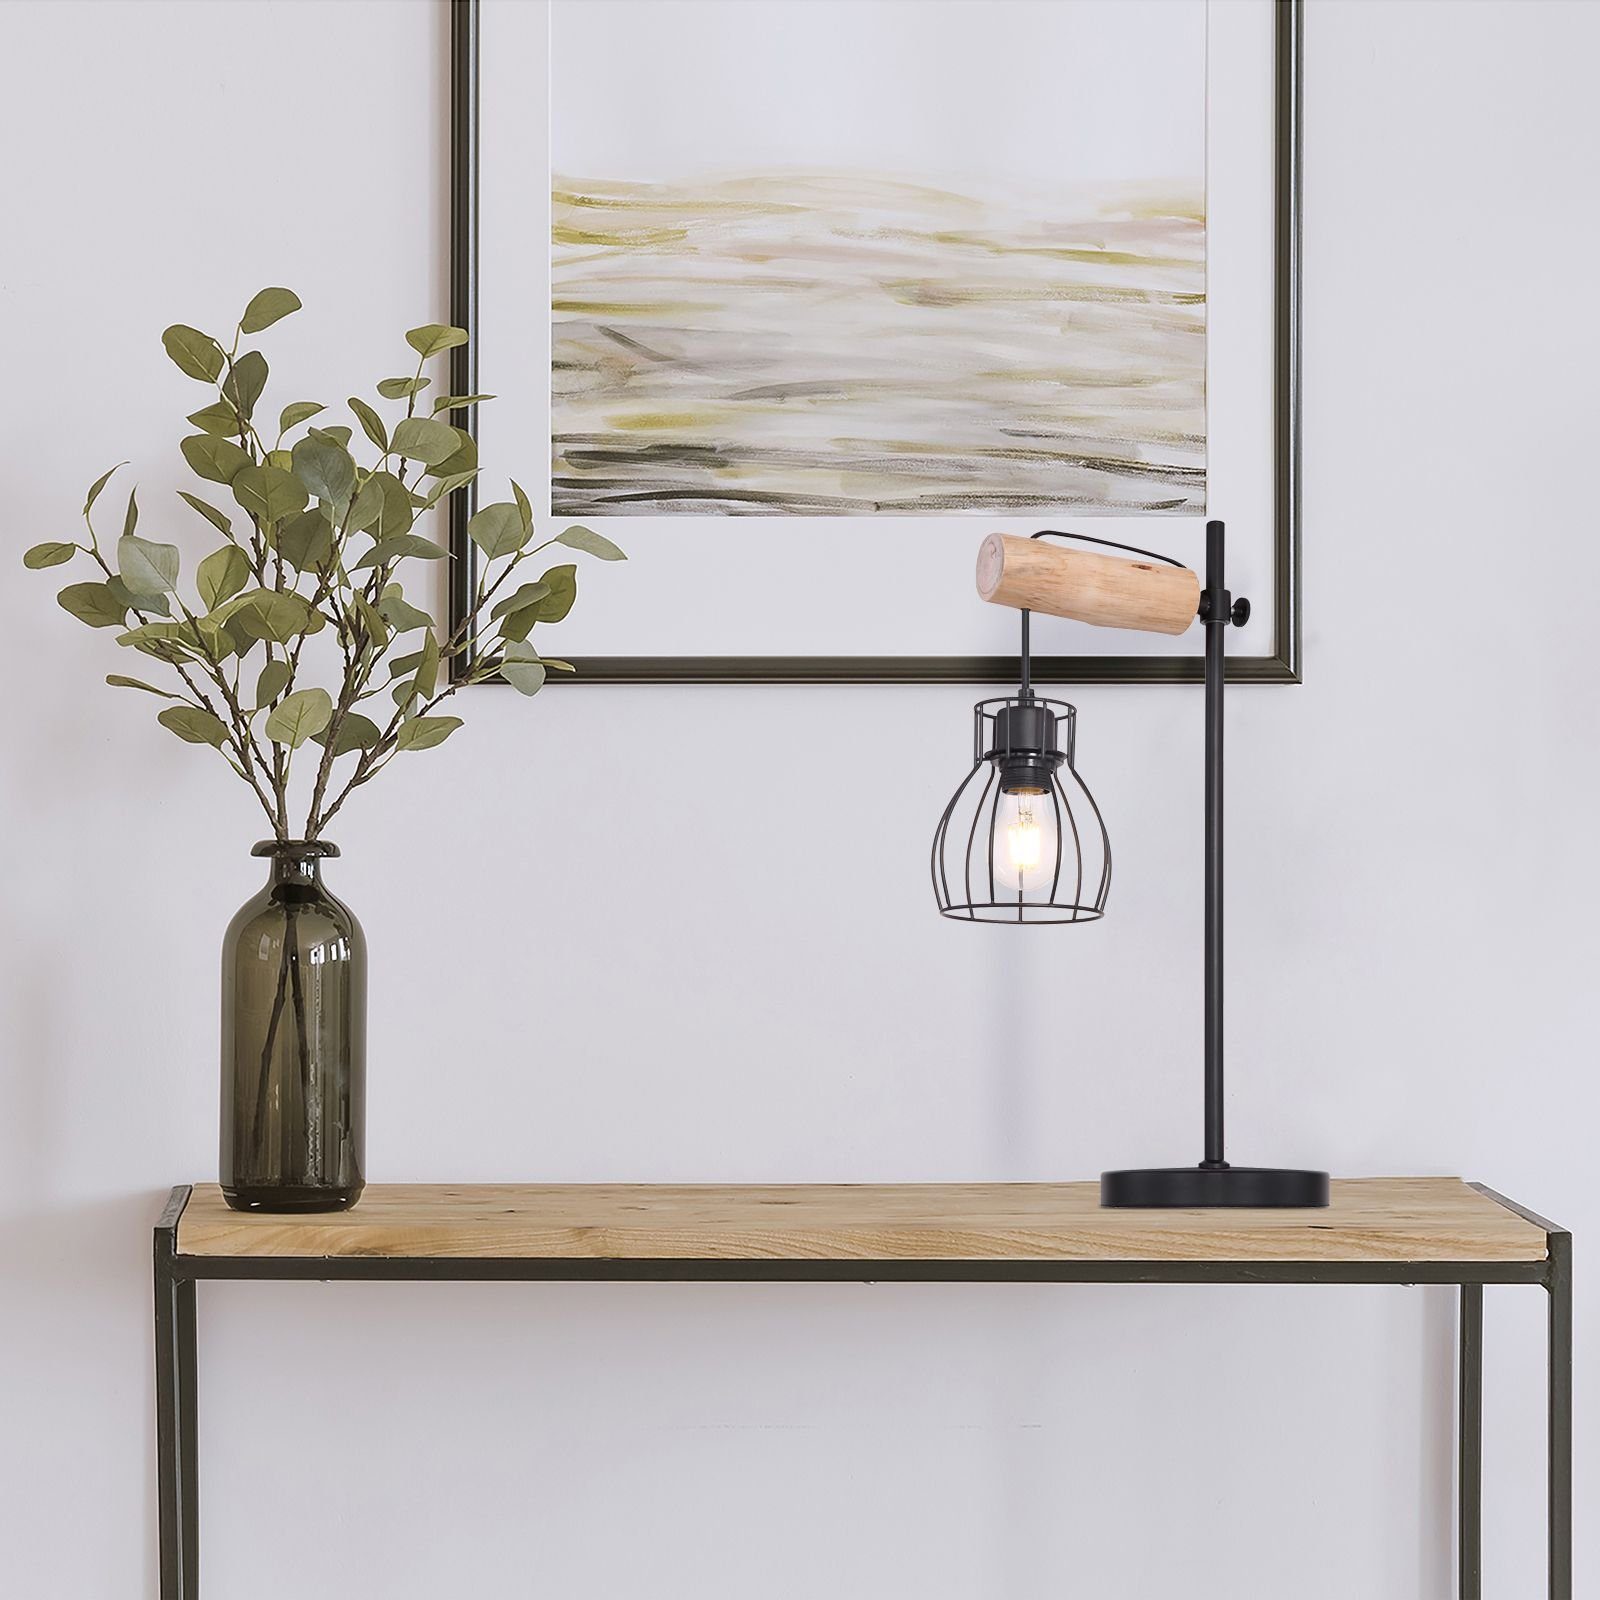 Tischleuchte Tischleuchte Wohnzimmer Globo mit Tischlampe Schalter GLOBO Holz